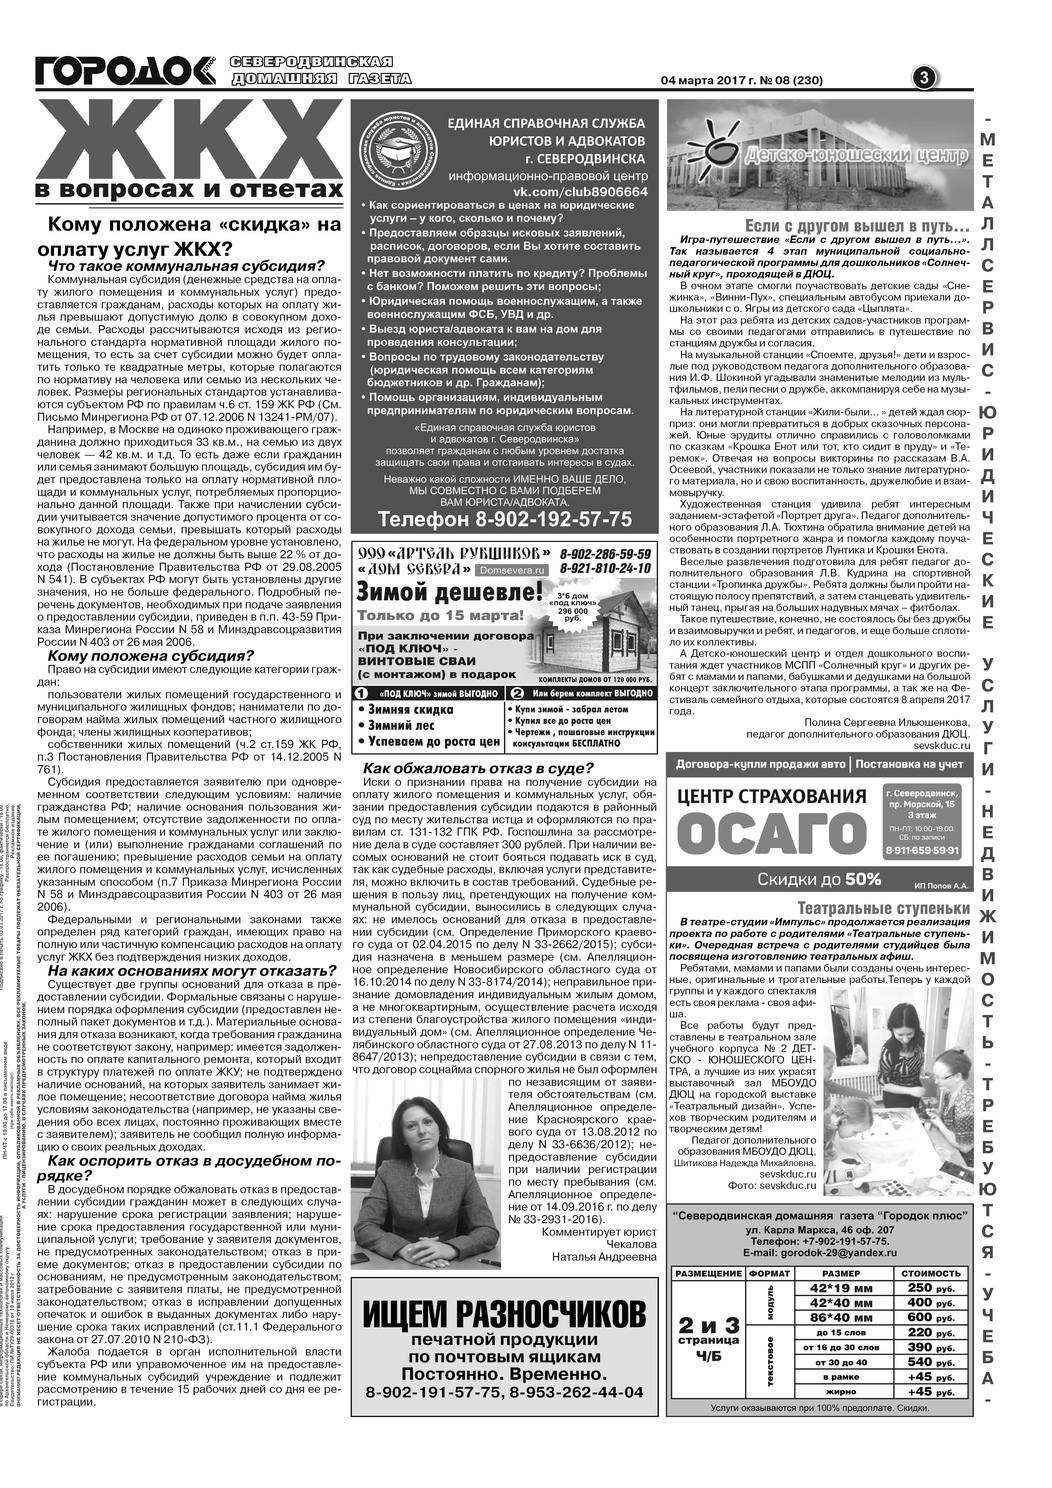 Городок плюс, выпуск номер 8 от 04 марта 2017 года, страница 3.